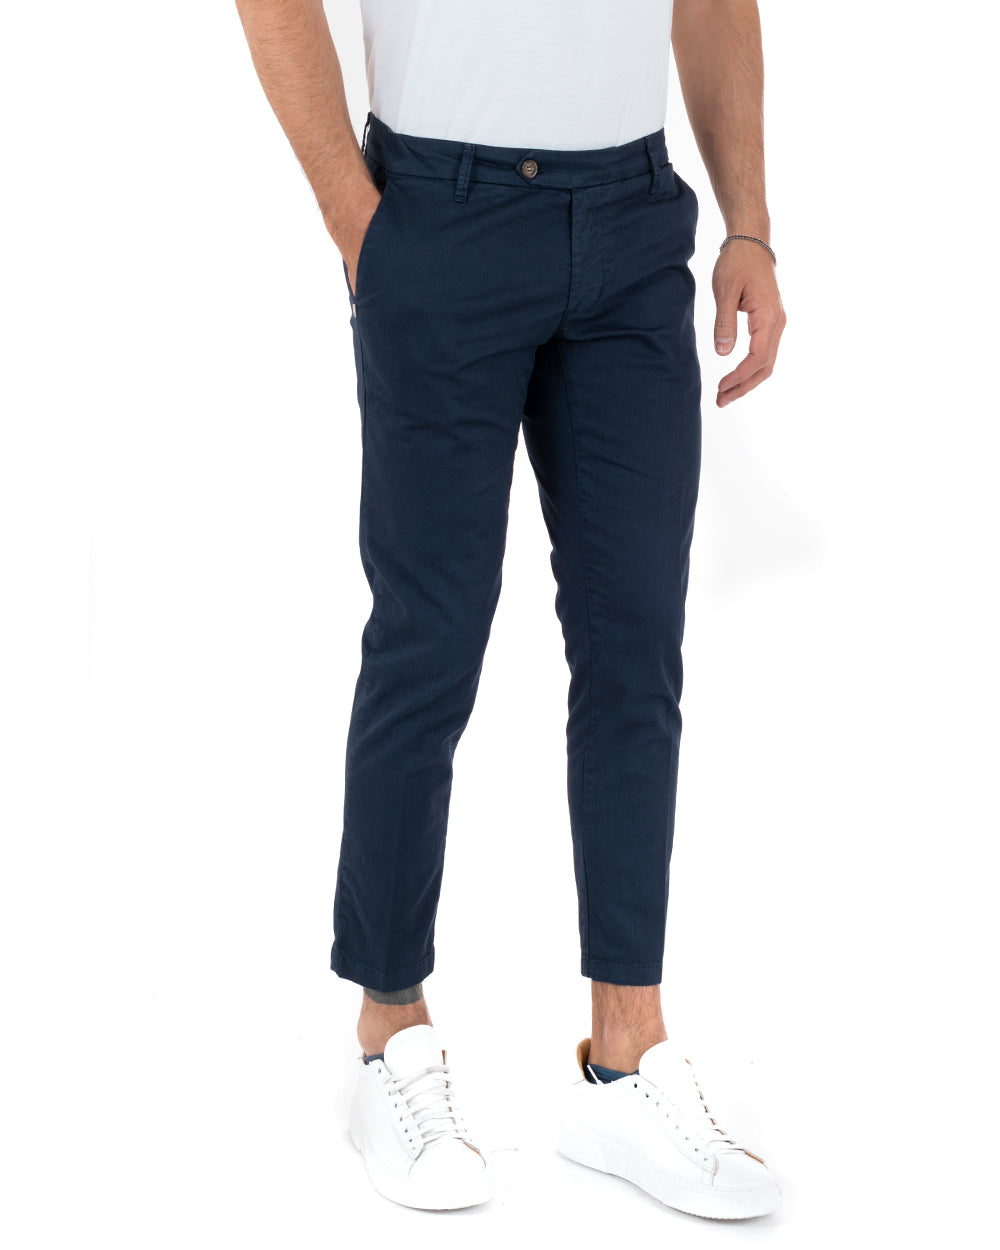 Pantaloni Uomo Cotone Tasca America Abbottonatura Allungata Capri Sartoriale Blu GIOSAL-P5686A